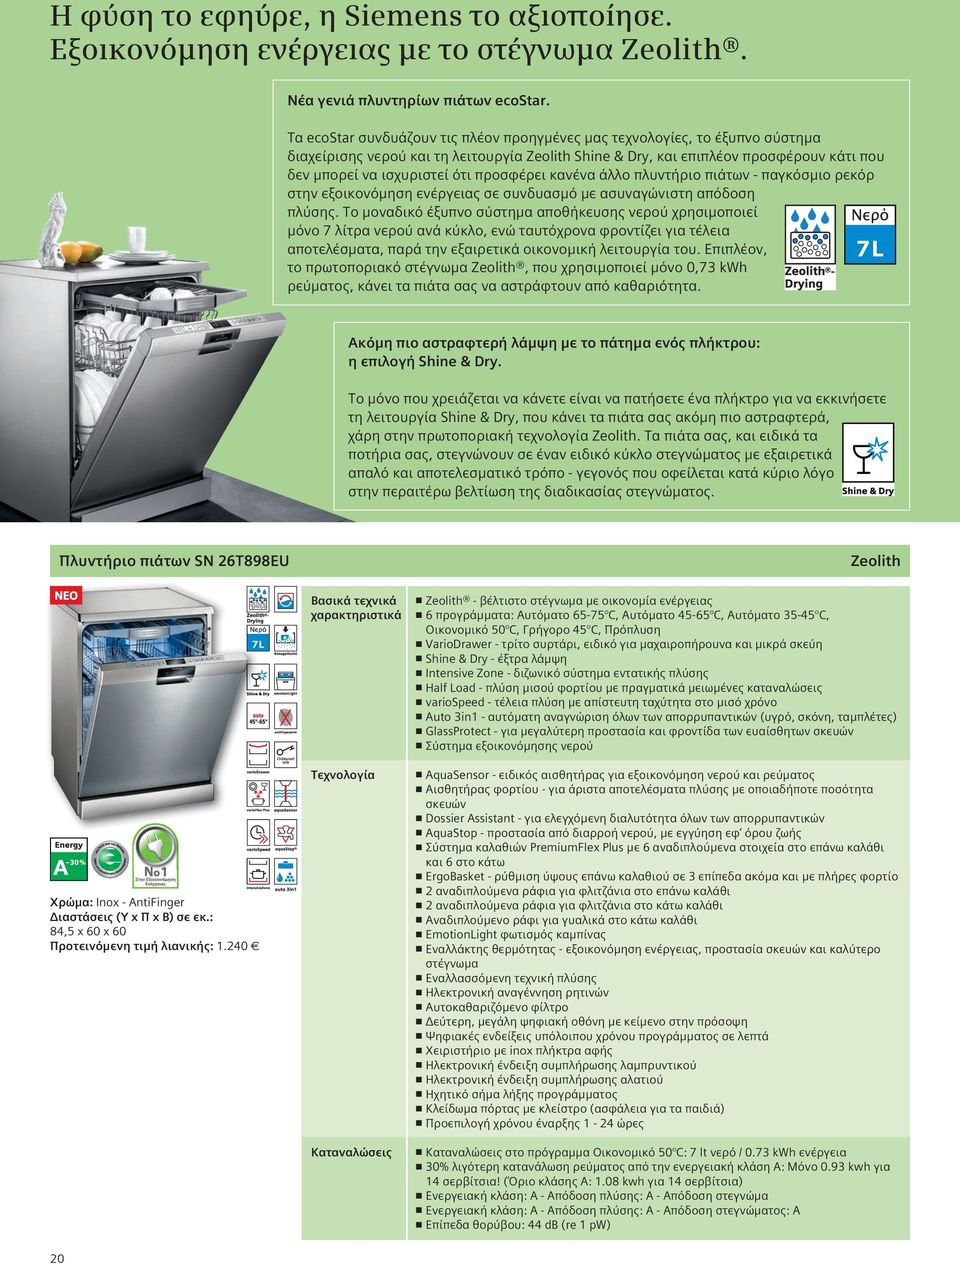 προσφέρει κανένα άλλο πλυντήριο πιάτων - παγκόσμιο ρεκόρ στην εξοικονόμηση ενέργειας σε συνδυασμό με ασυναγώνιστη απόδοση πλύσης.